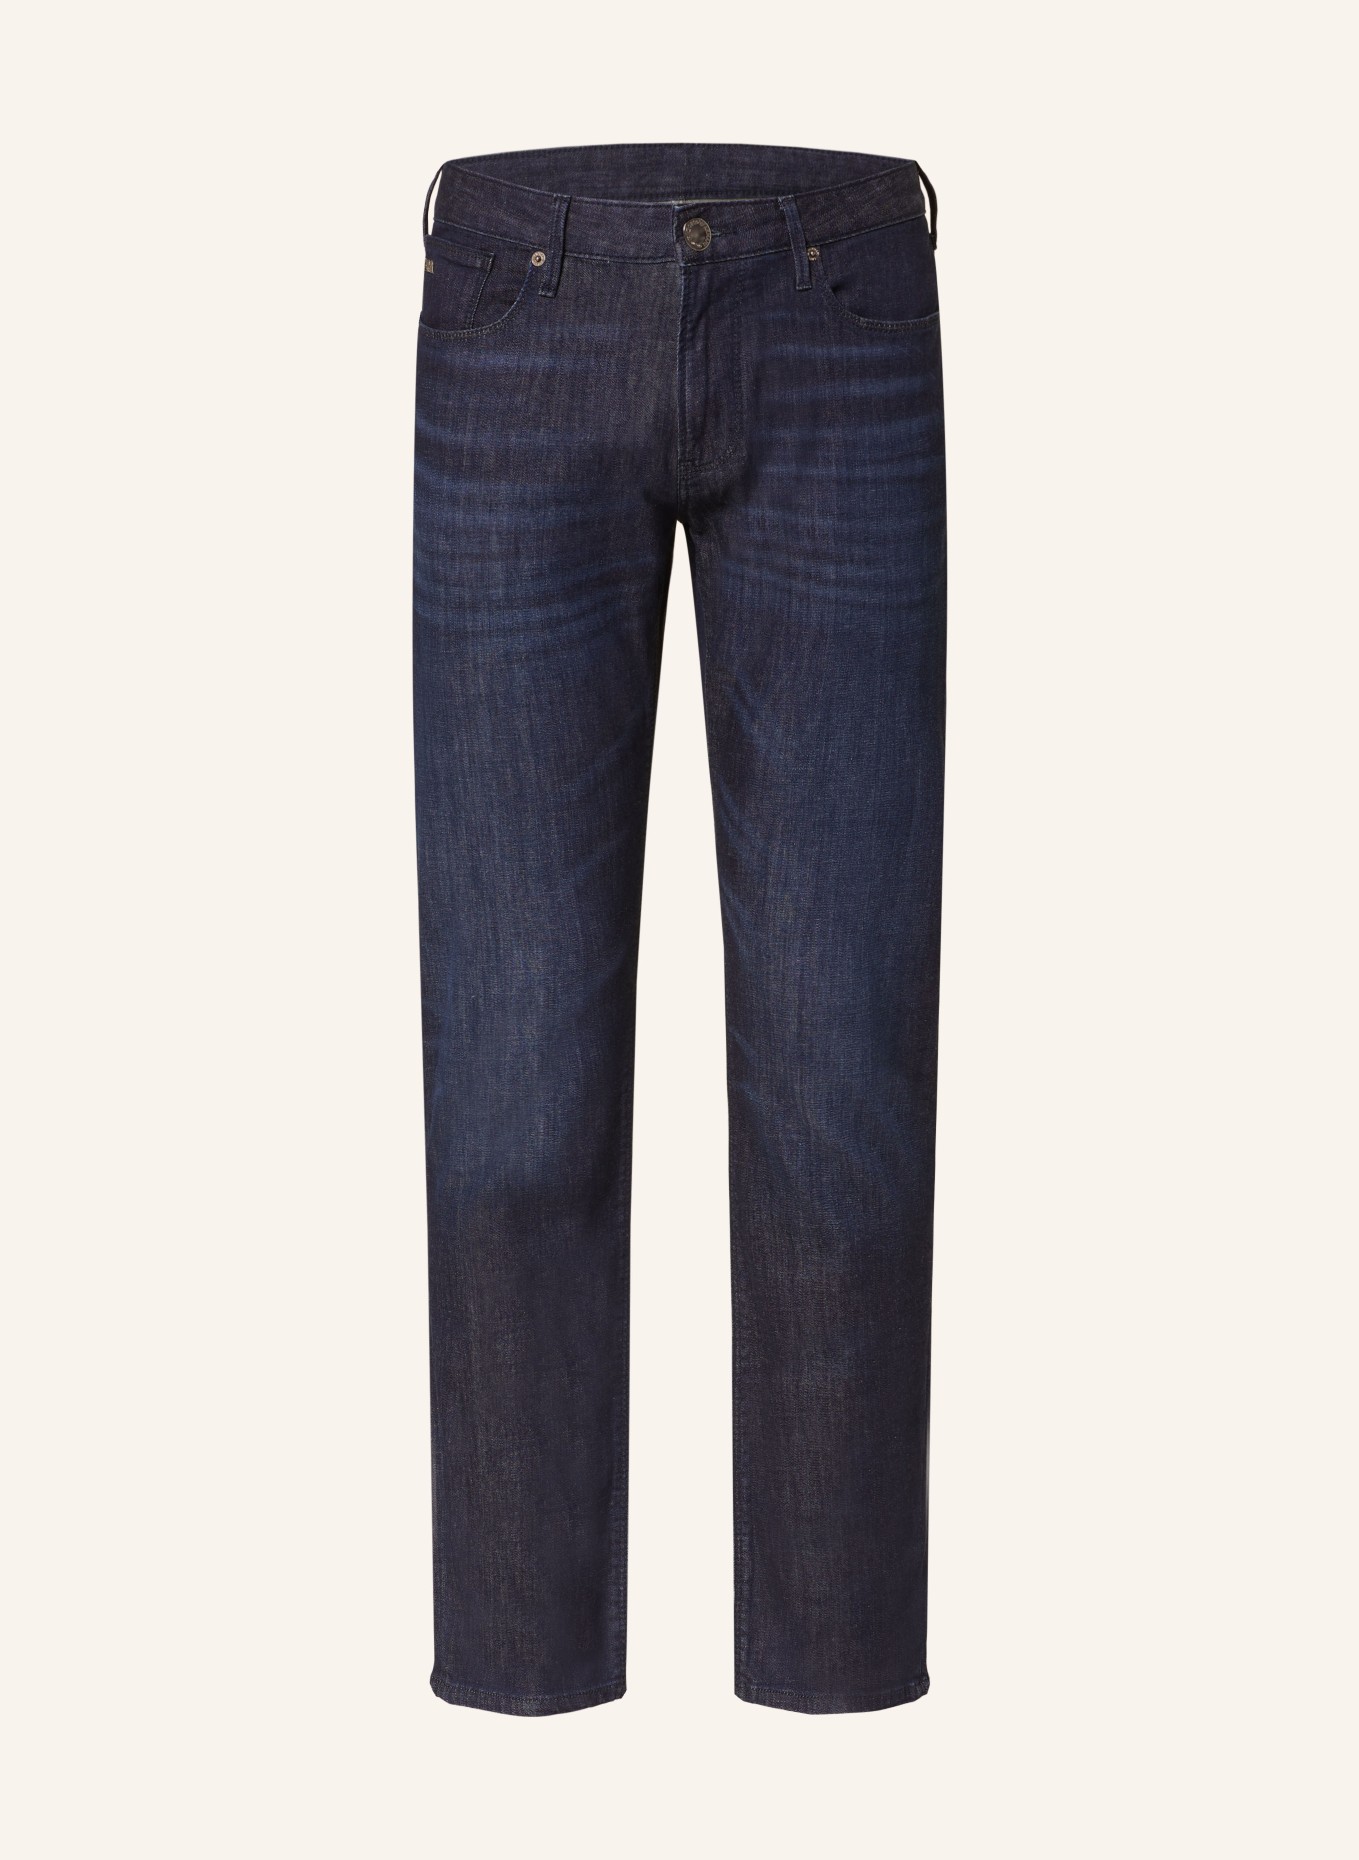 EMPORIO ARMANI Jeans Slim Fit, Farbe: 0941 DENIM BLUE (Bild 1)